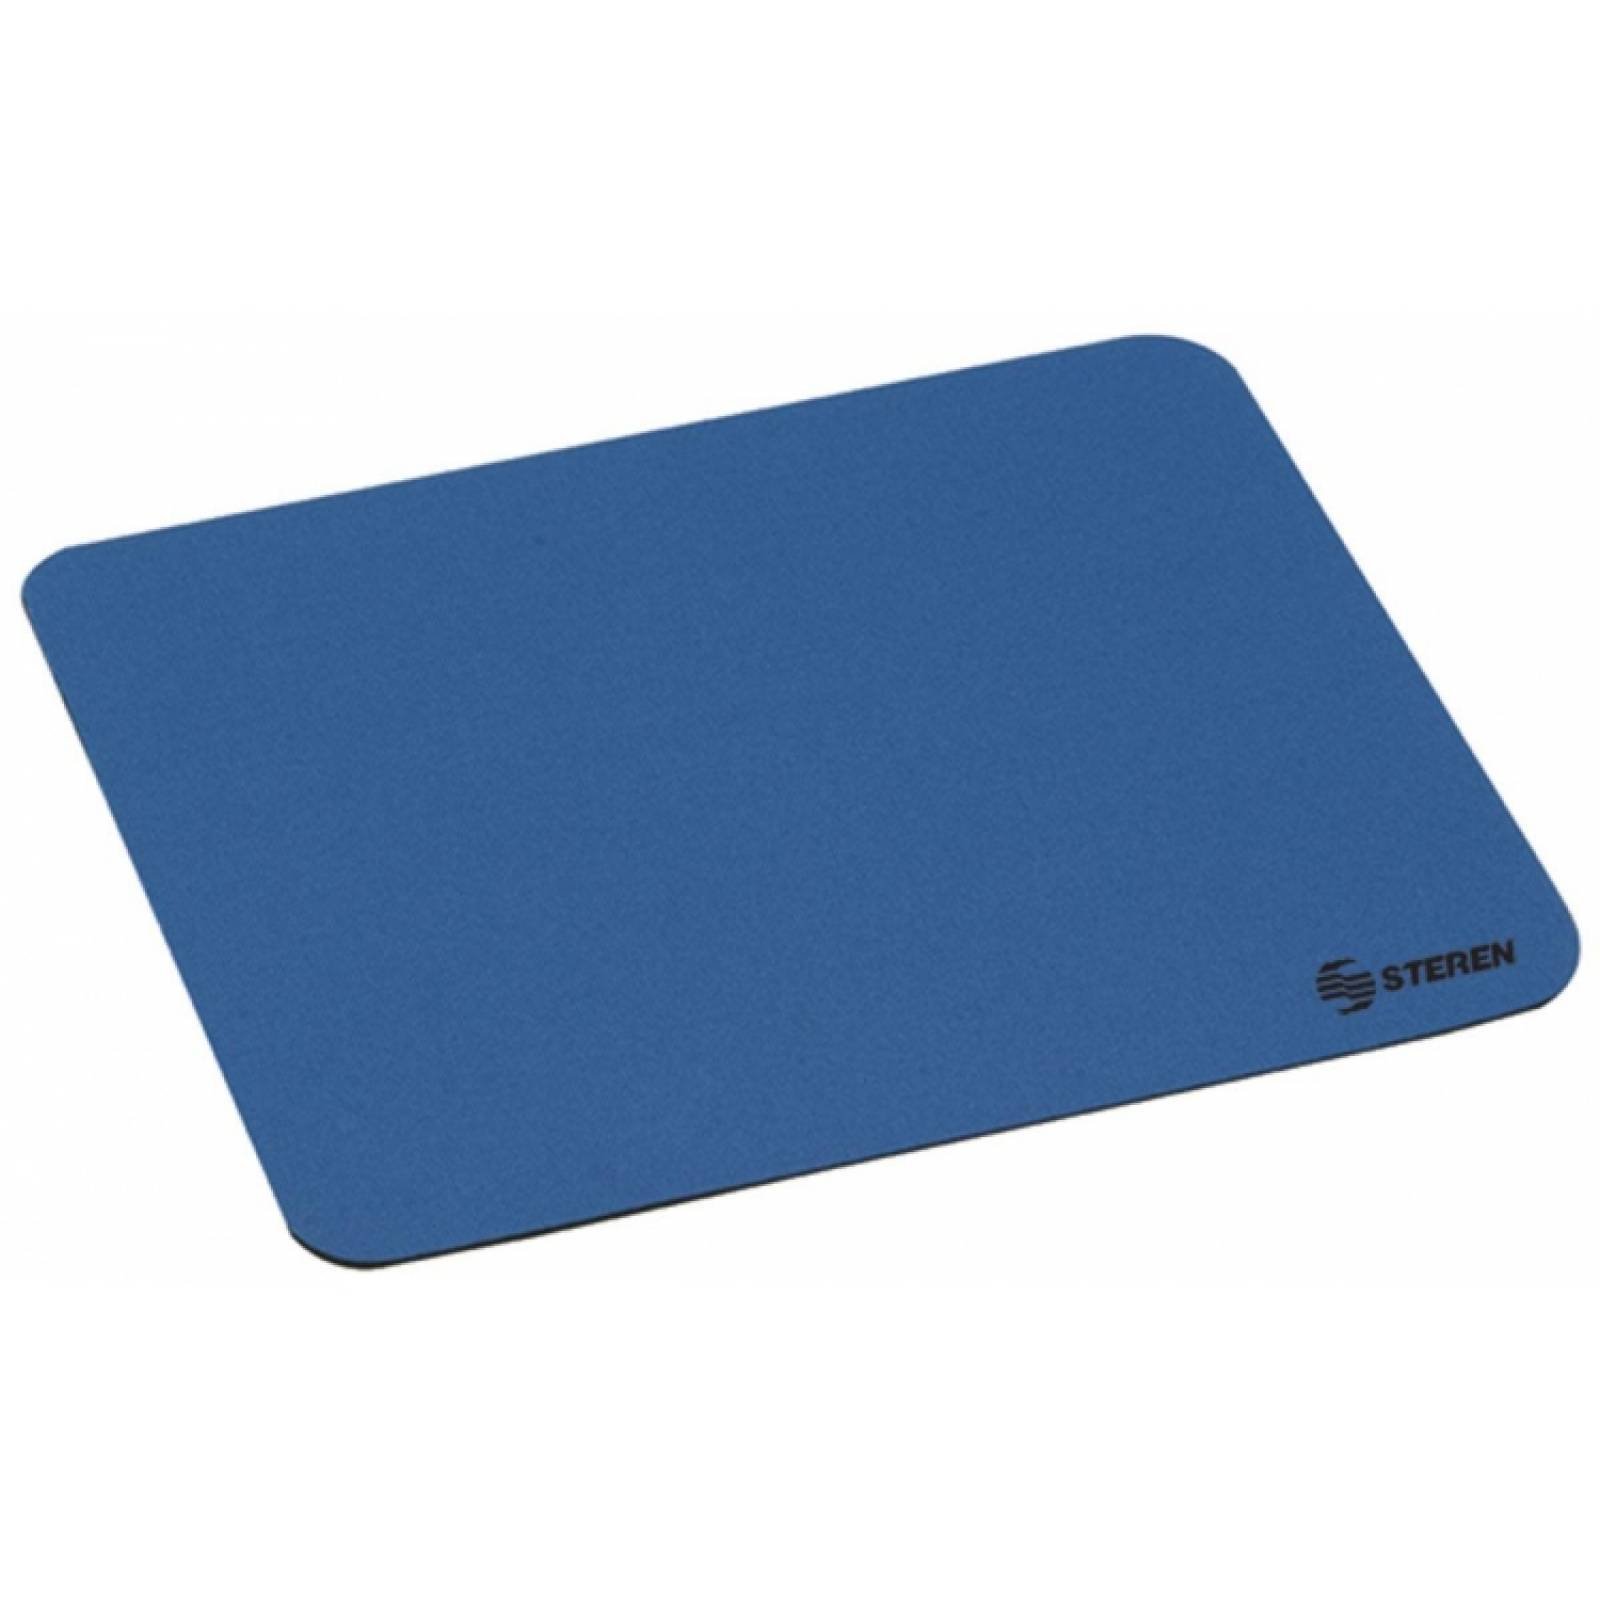 Mouse pad rectangular